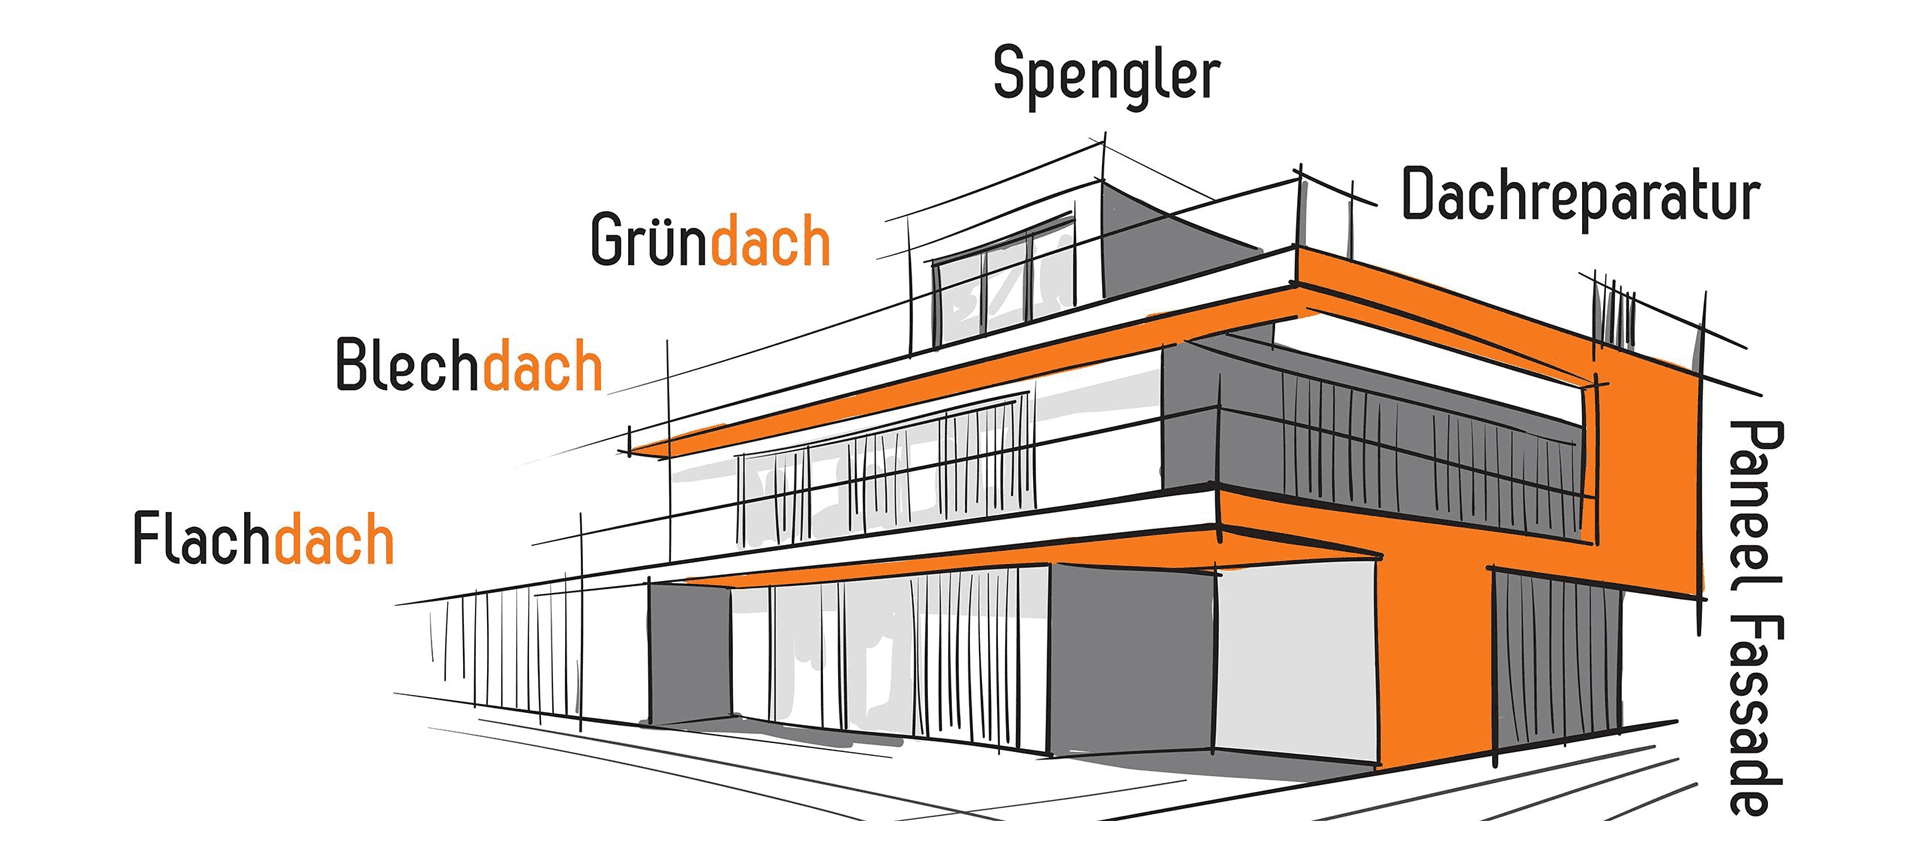 Flachdach, Blechdach, Gründach, Spengler, Dachreparatur, Paneel Fassade